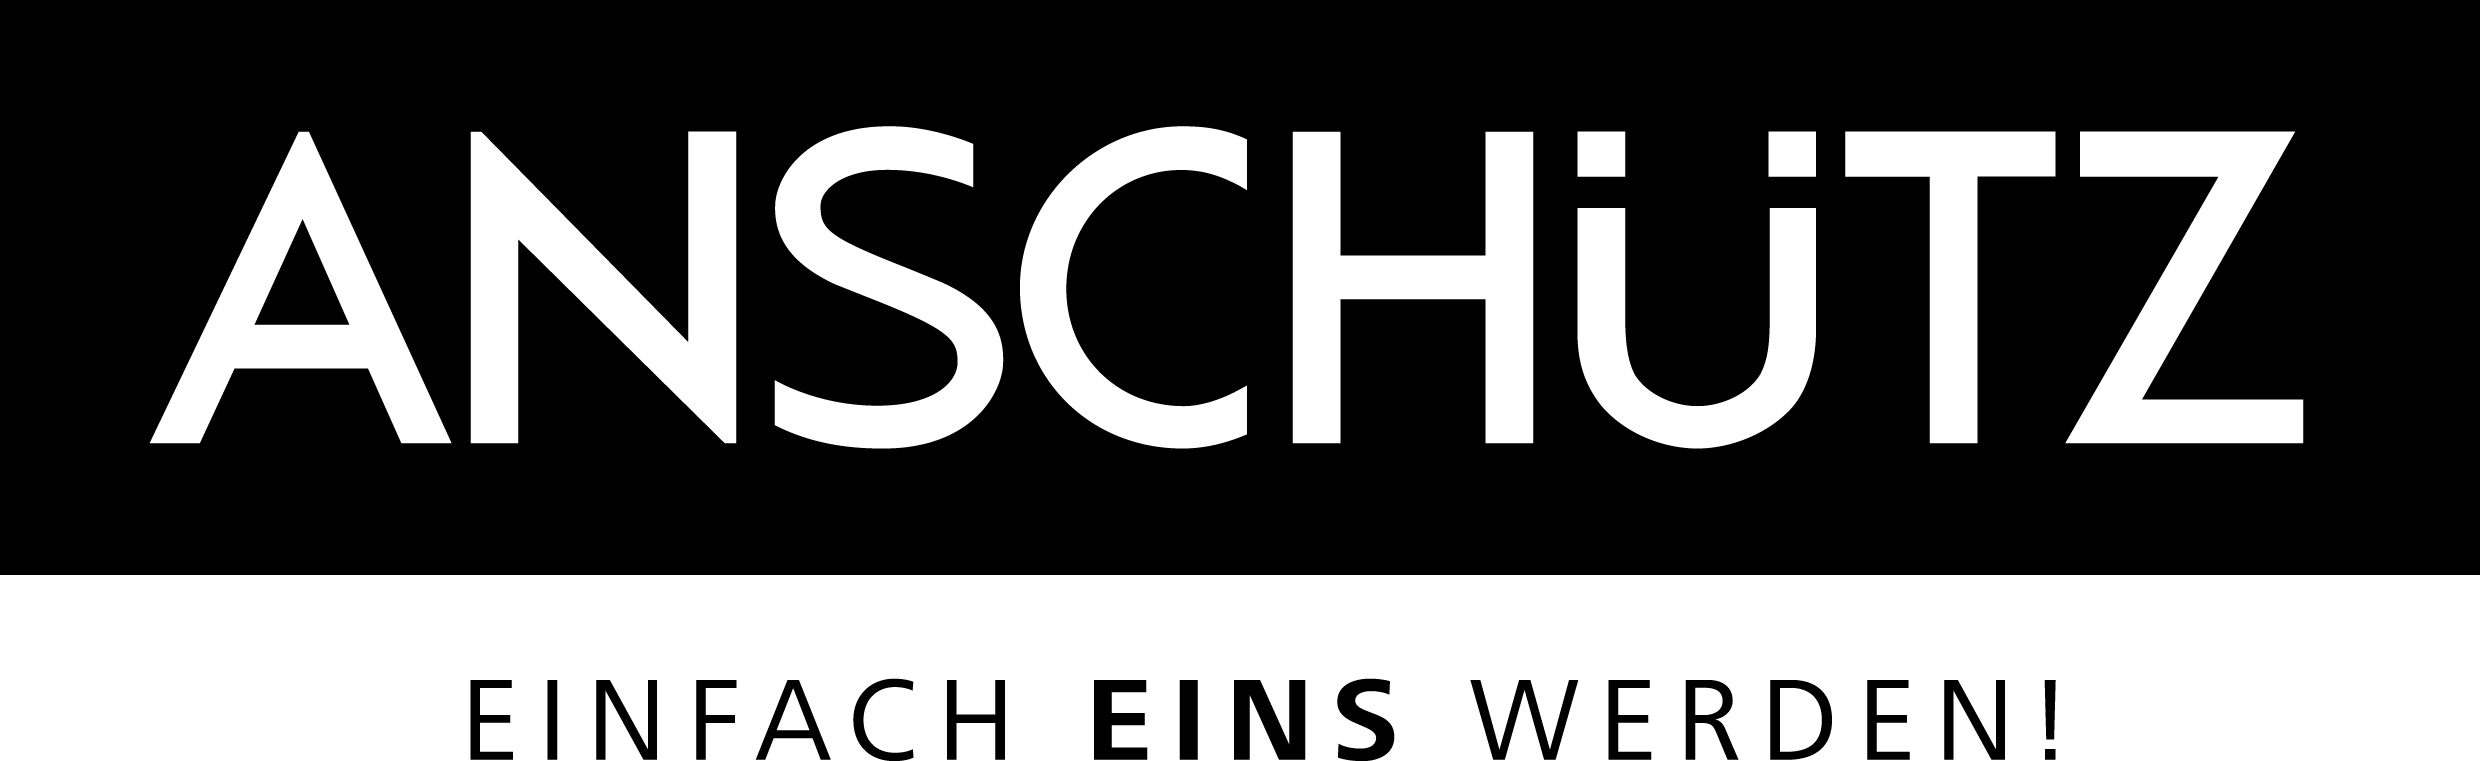 Anschutz Gun Logo - J.G. ANSCHÜTZ GmbH & Co. KG - Logos